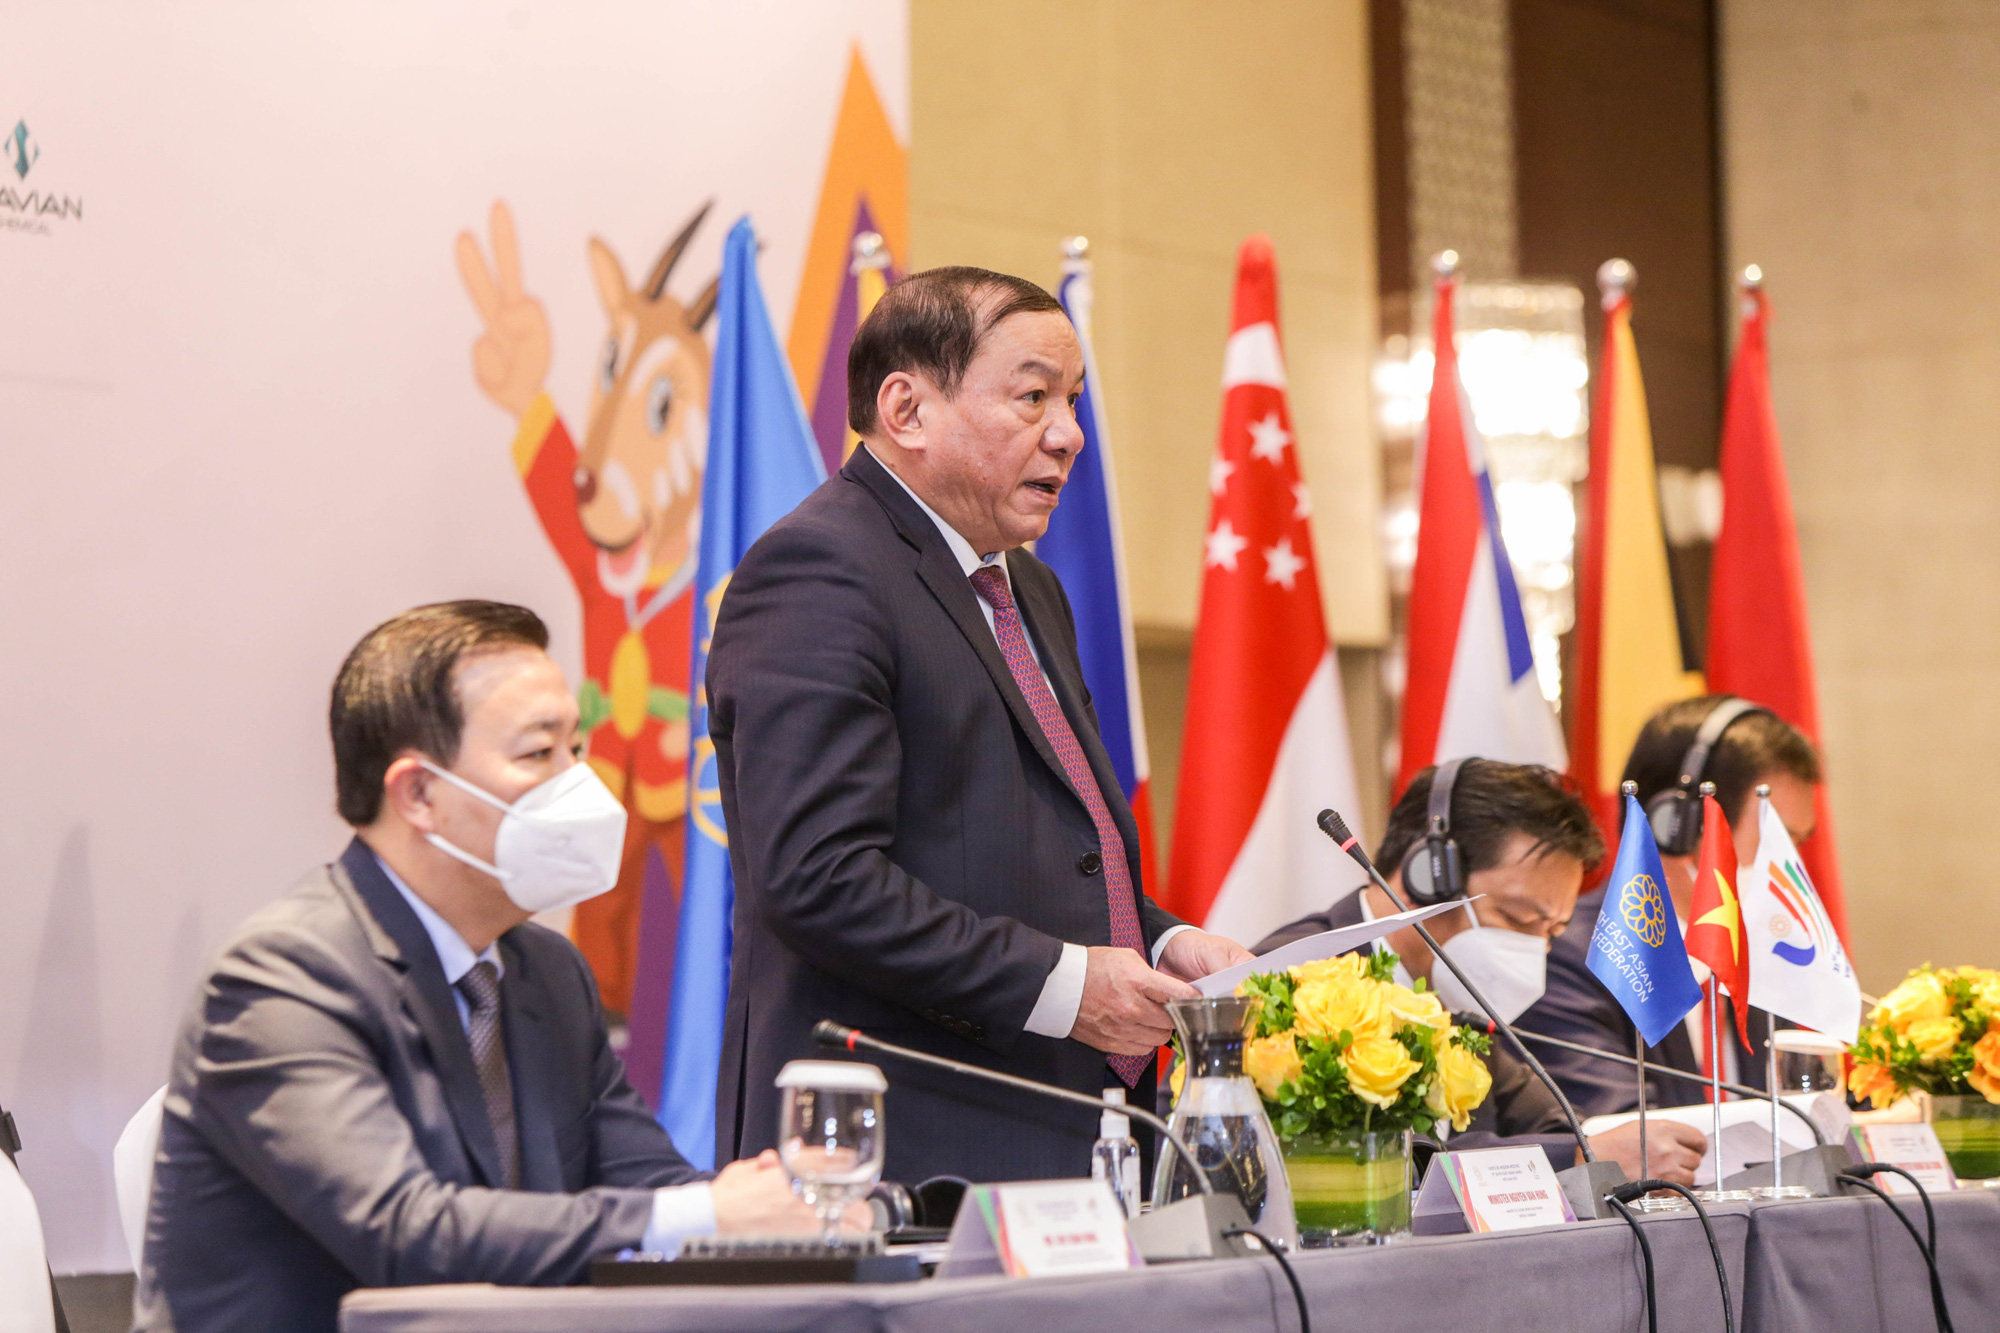 Bộ trưởng Nguyễn Văn Hùng: Việt Nam mong muốn nhận sự chung tay, sẻ chia để SEA Games 31 được tổ chức an toàn, thành công, tạo nhiều ấn tượng tốt đẹp - Ảnh 1.